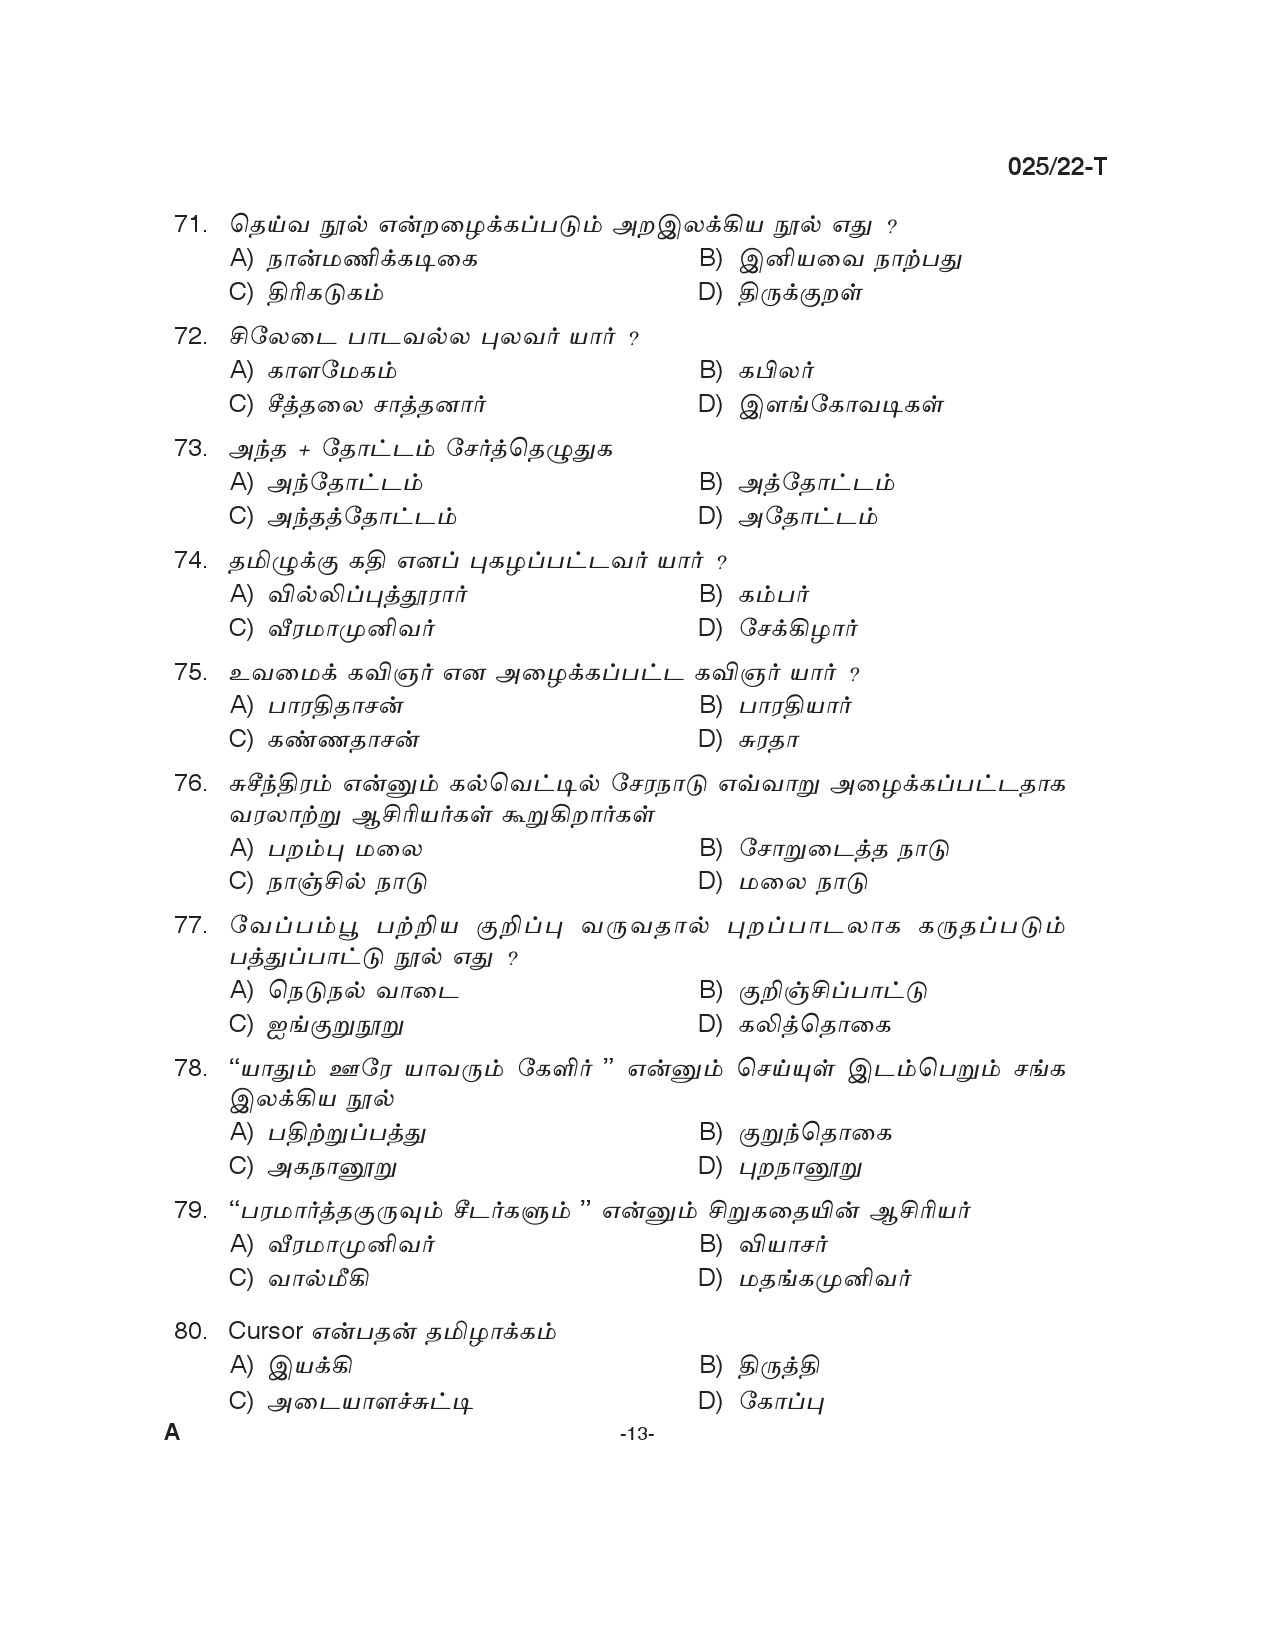 KPSC Civil Excise Officer Plus 2 Level Main Exam Tamil 2022 12